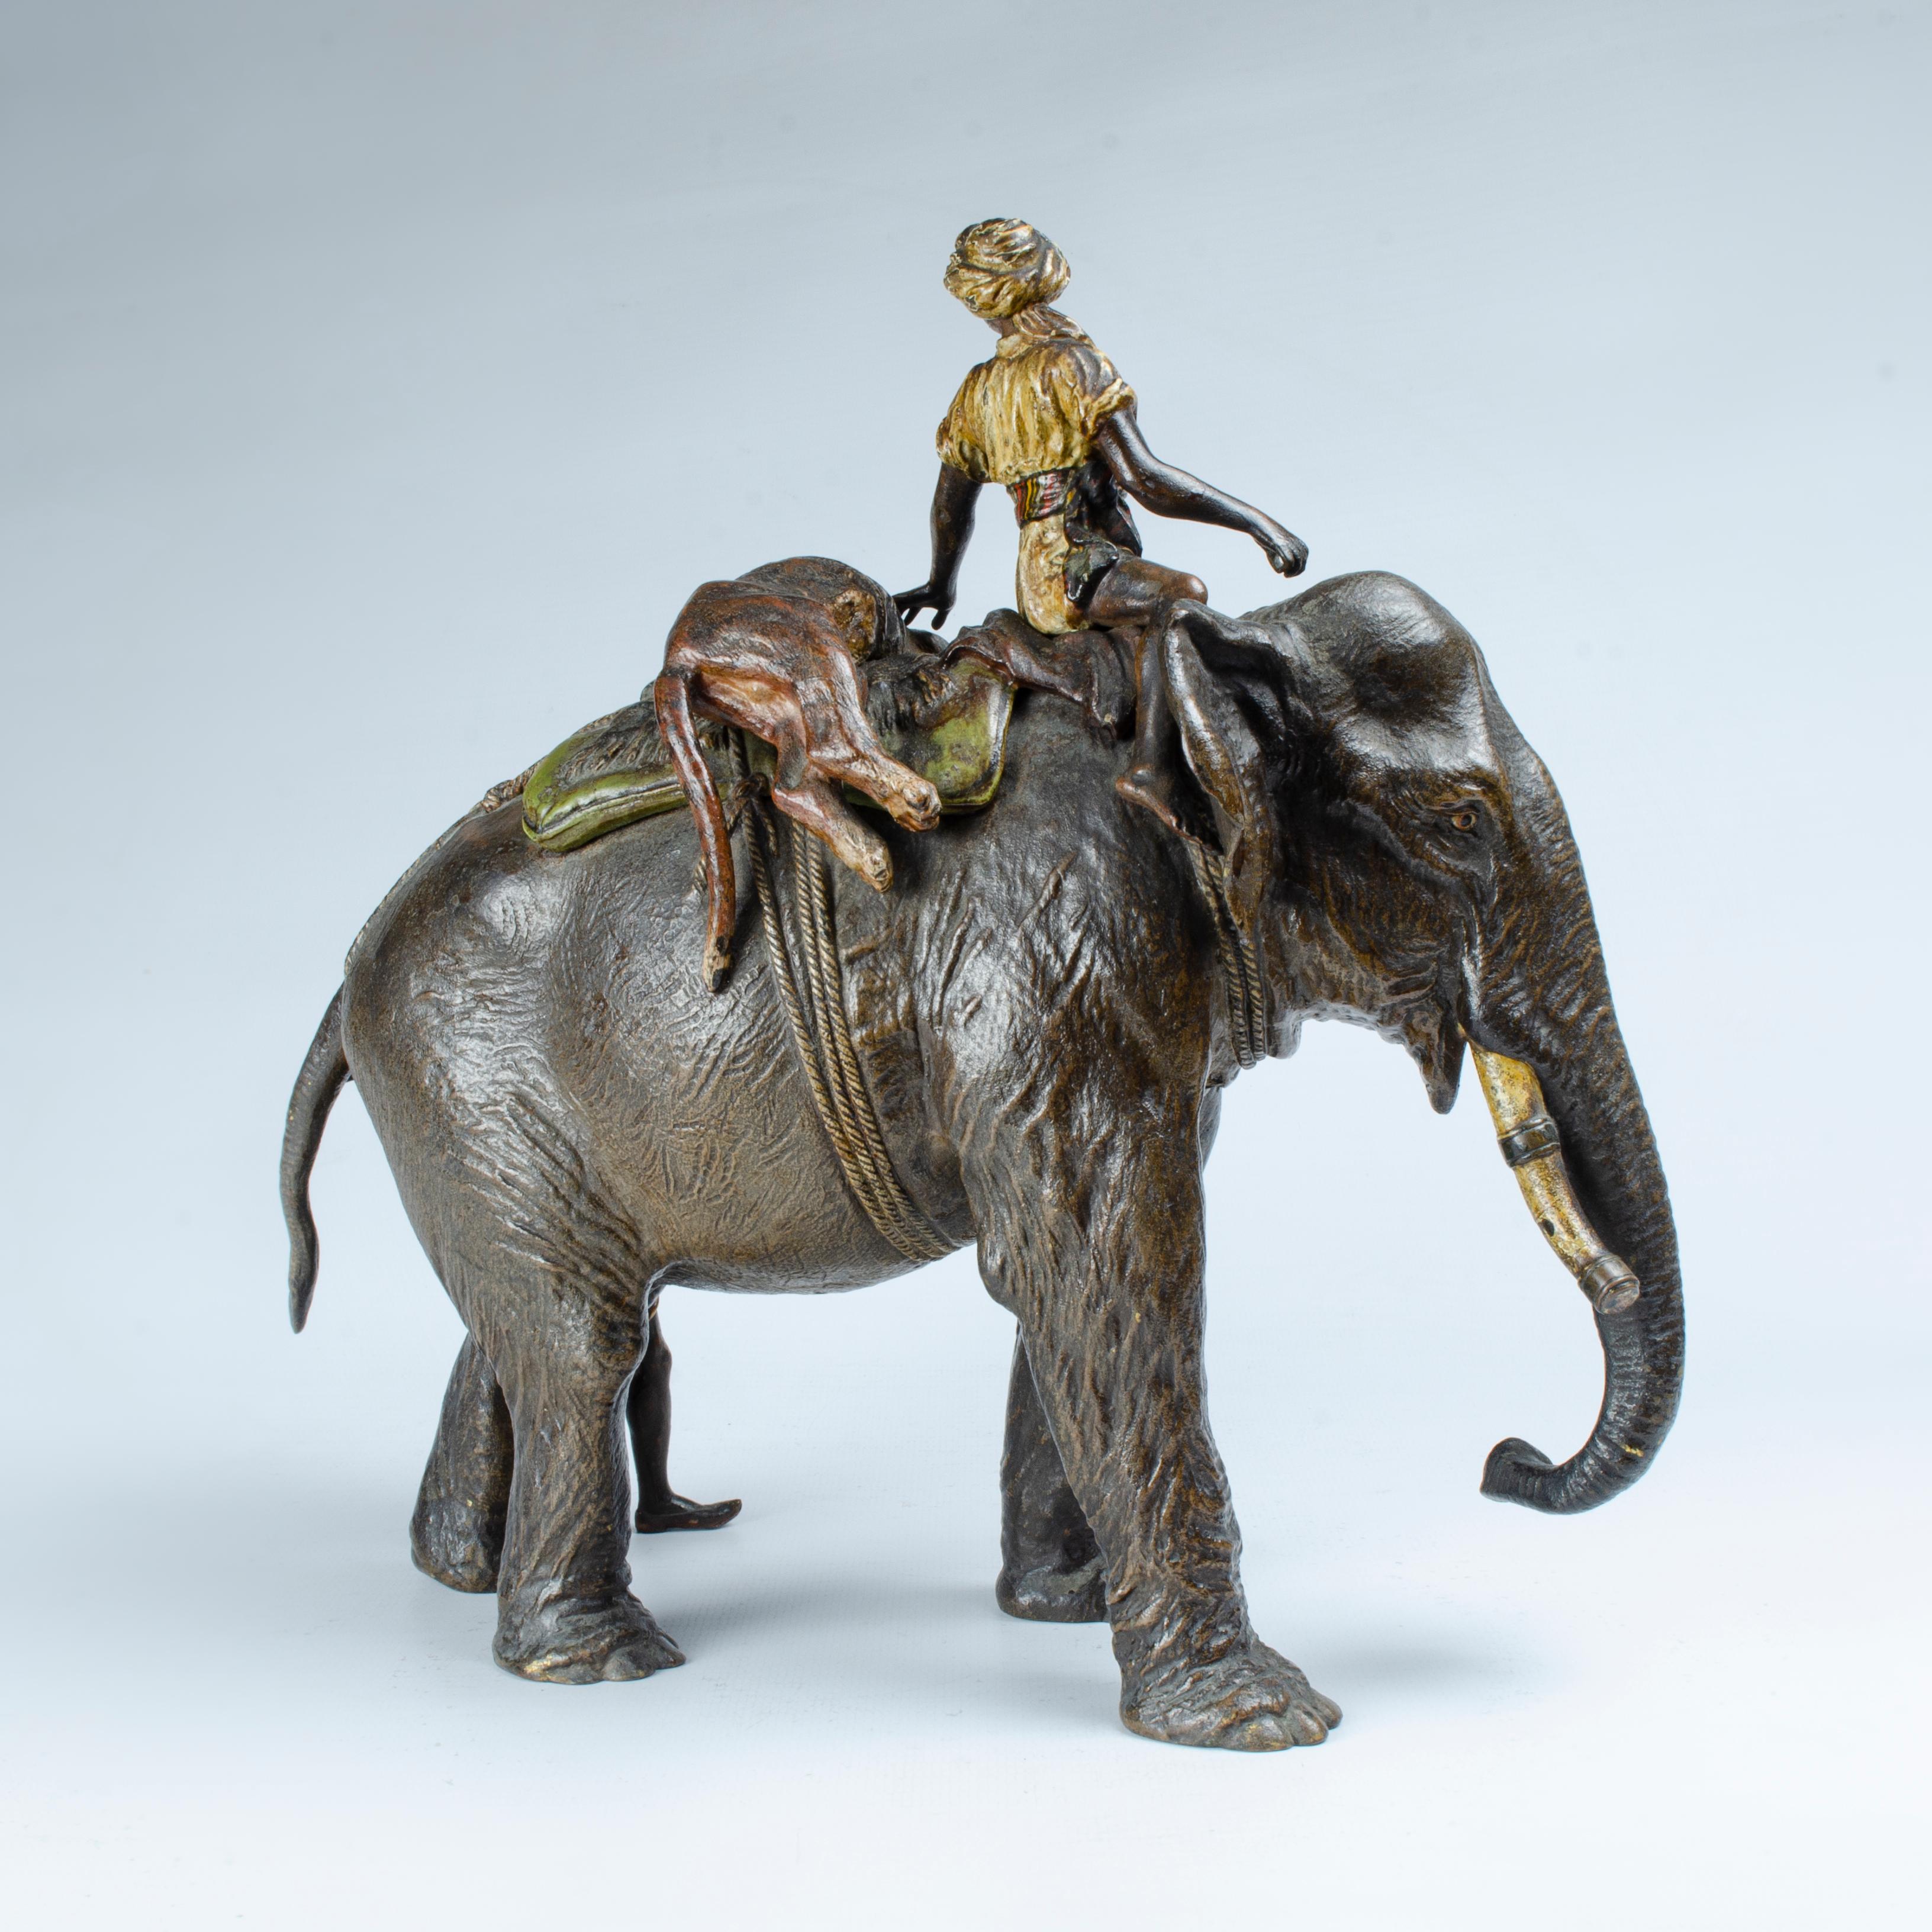 Garniture de figures en bronze, représentant une scène de chasse avec un éléphant sur lequel est solidement attaché un tigre mort, accompagné d'un chasseur et d'un autre à ses côtés avec son fusil en bandoulière. Par Franz Xavier Bergman